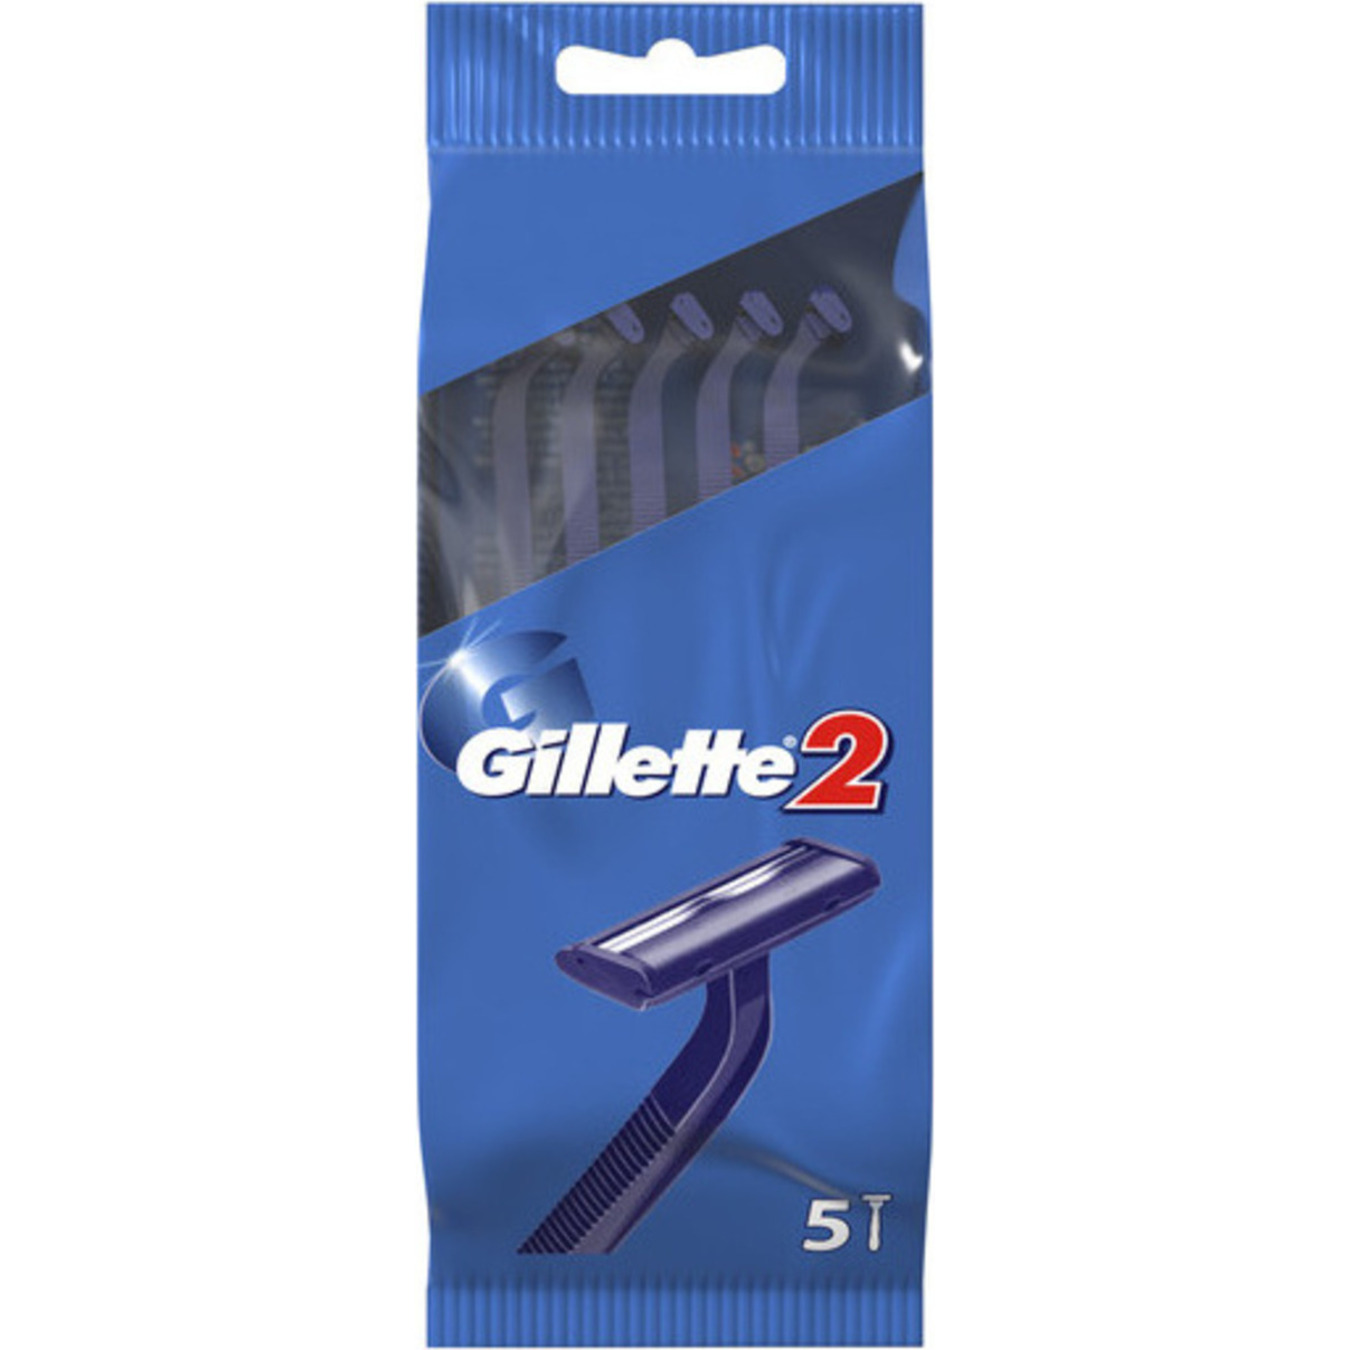 Gillette 2 Disposable Razors 5pcs